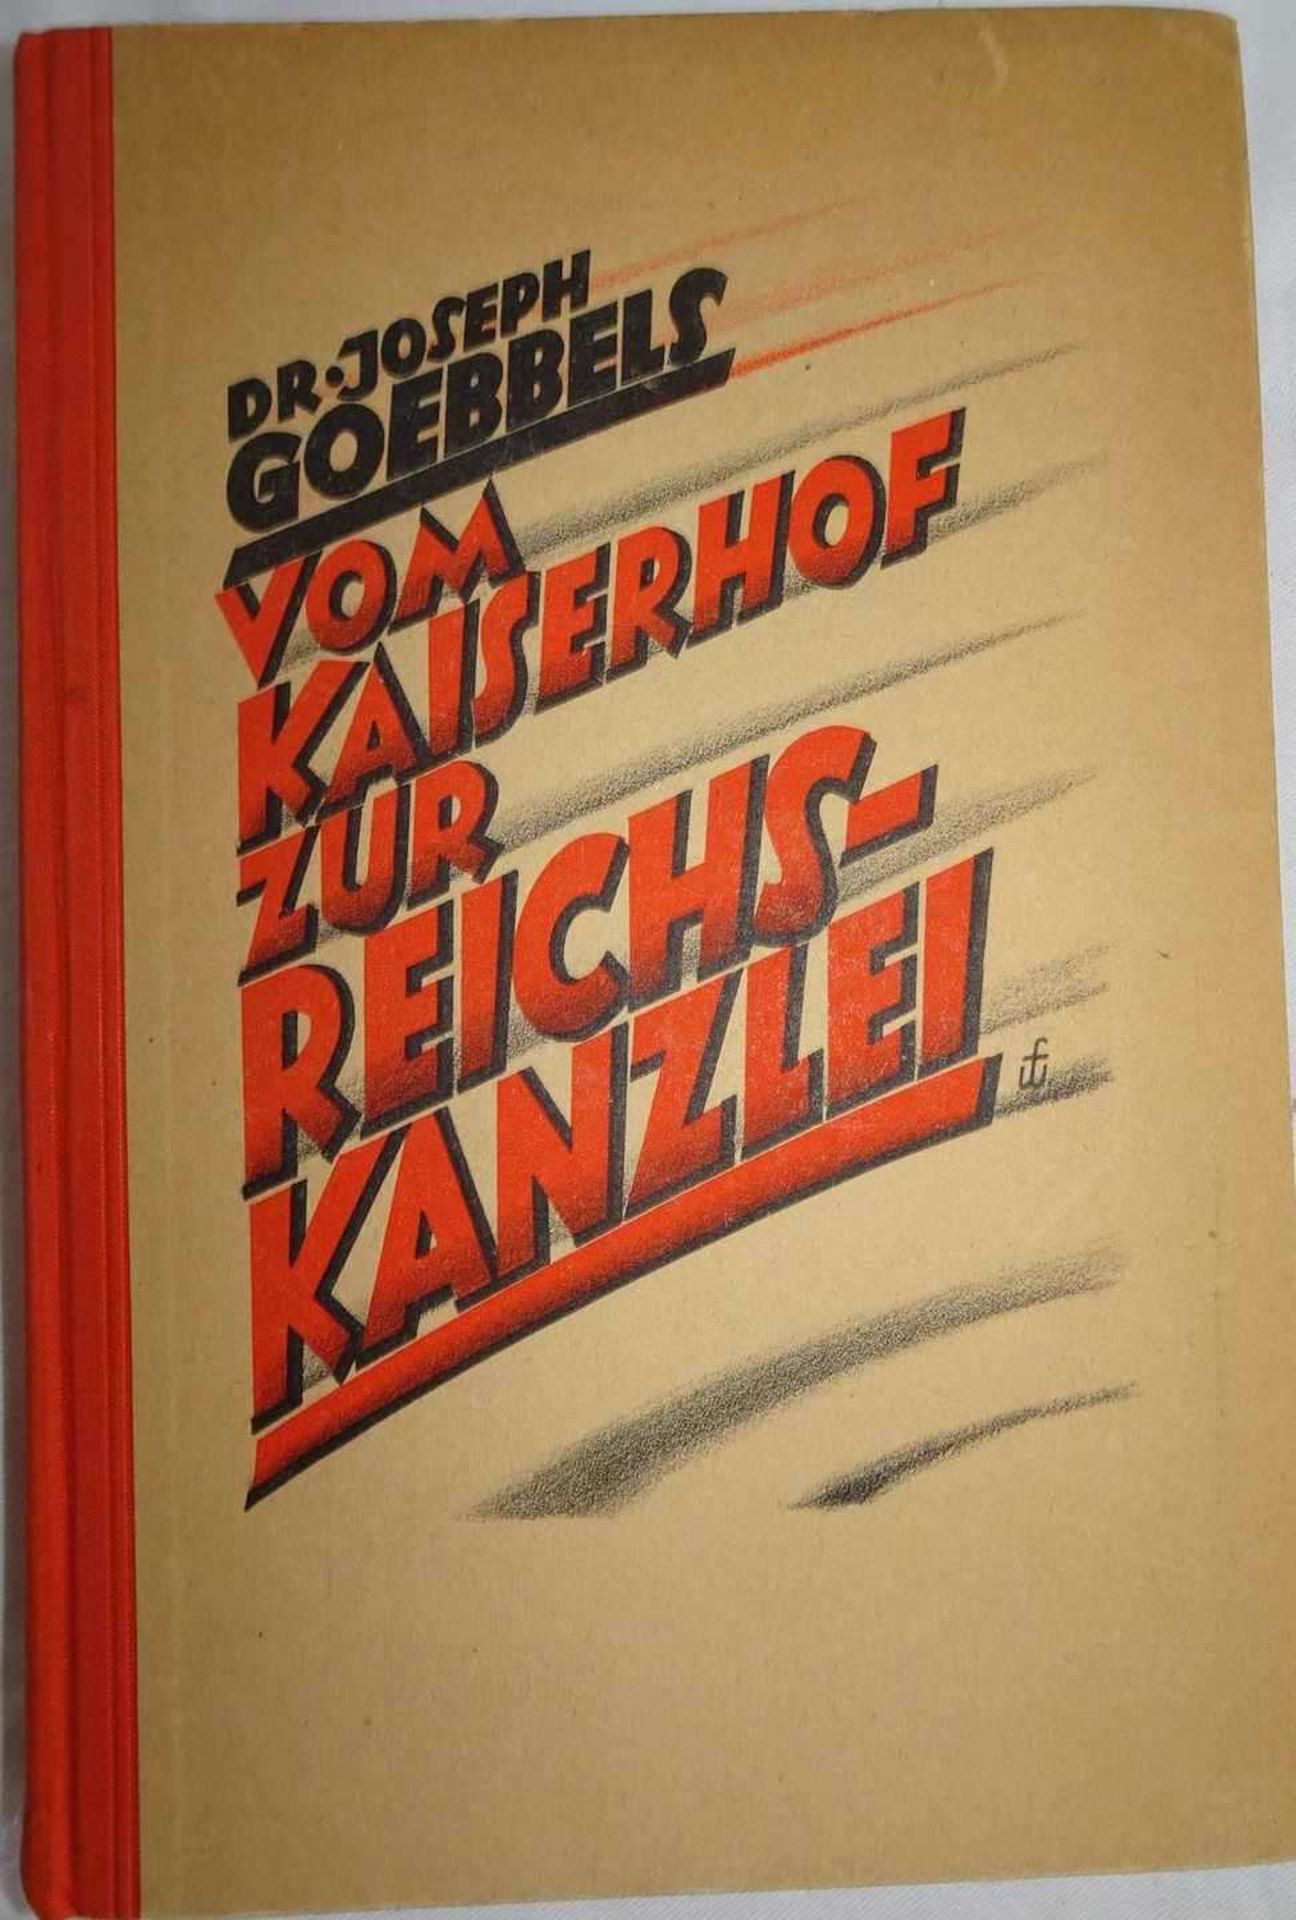 Buch Dr. Joseph Goebbels ""Vom Kaiserhof zur Reichskanzlei"" Book Dr. Joseph Goebbels ""From